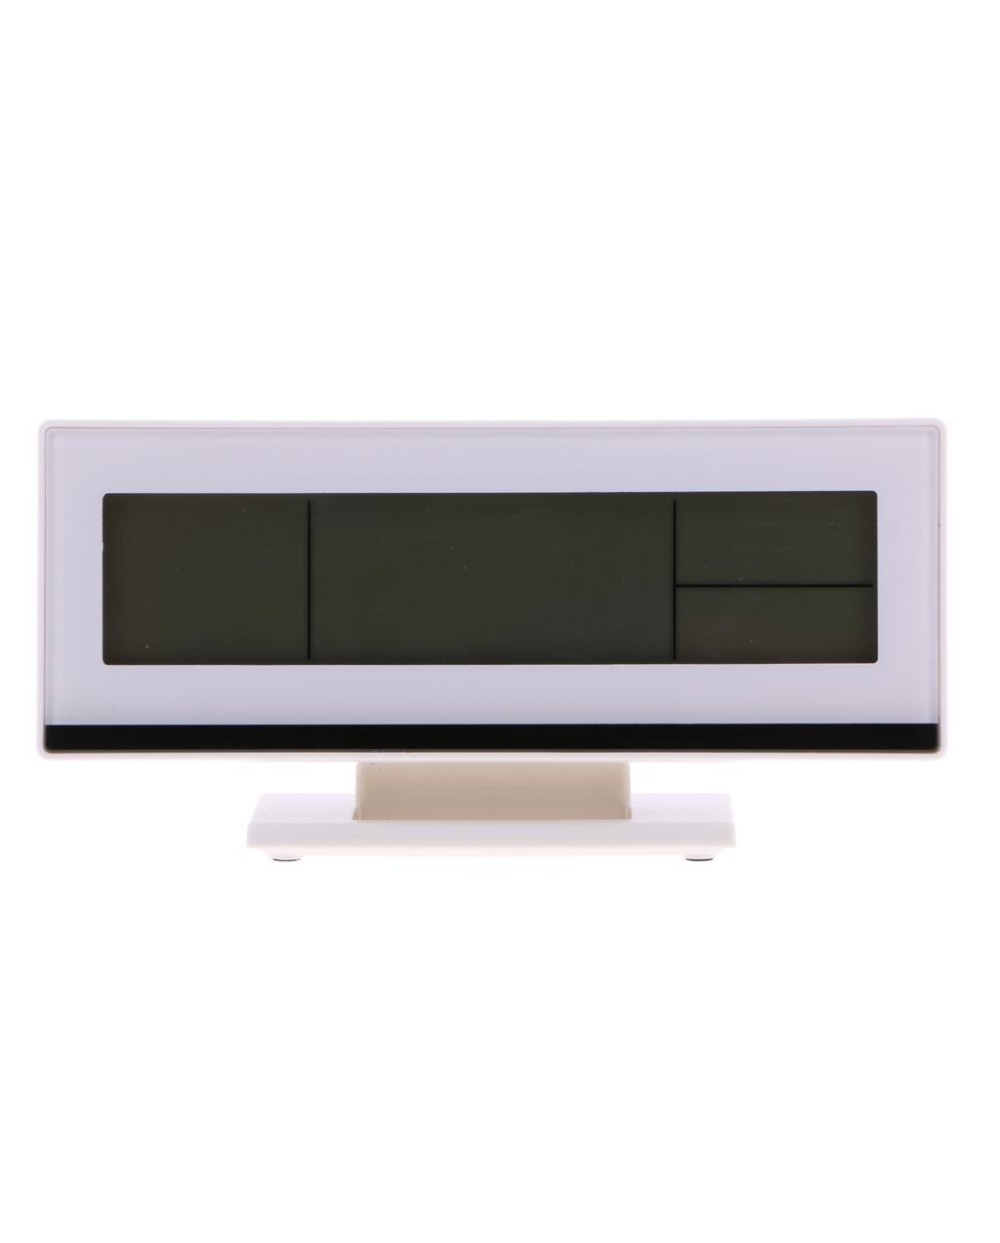 Ρολόι Ξυπνητήρι με Αισθητήρα Ήχου, LCD Οθόνη & Ένδειξη Θερμοκρασίας DS-3618